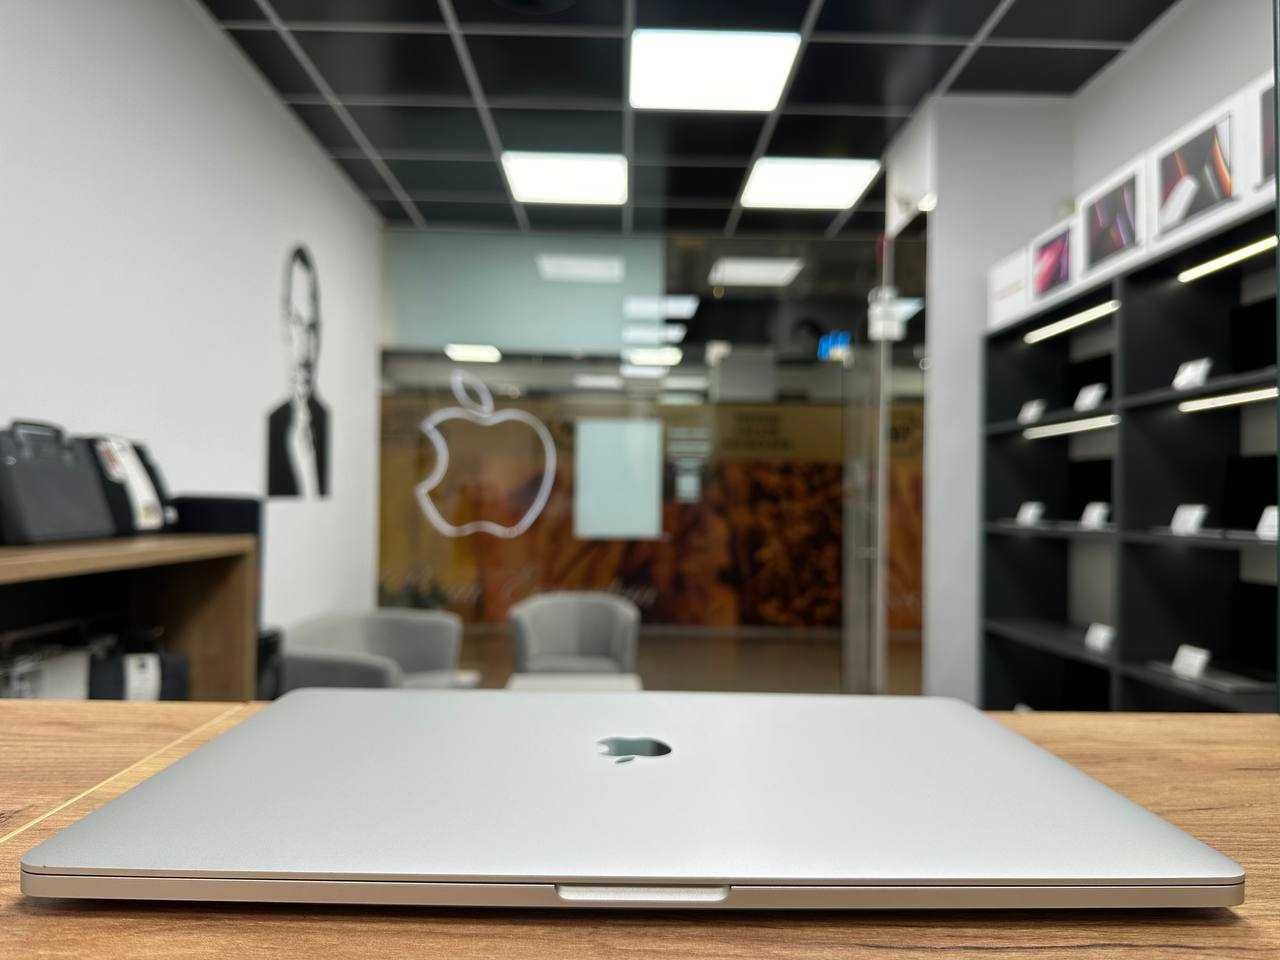 Гарантія! MacBook Pro 16 2019 I7|16|512 Стан Ідеалу! Макбук 242 цикли